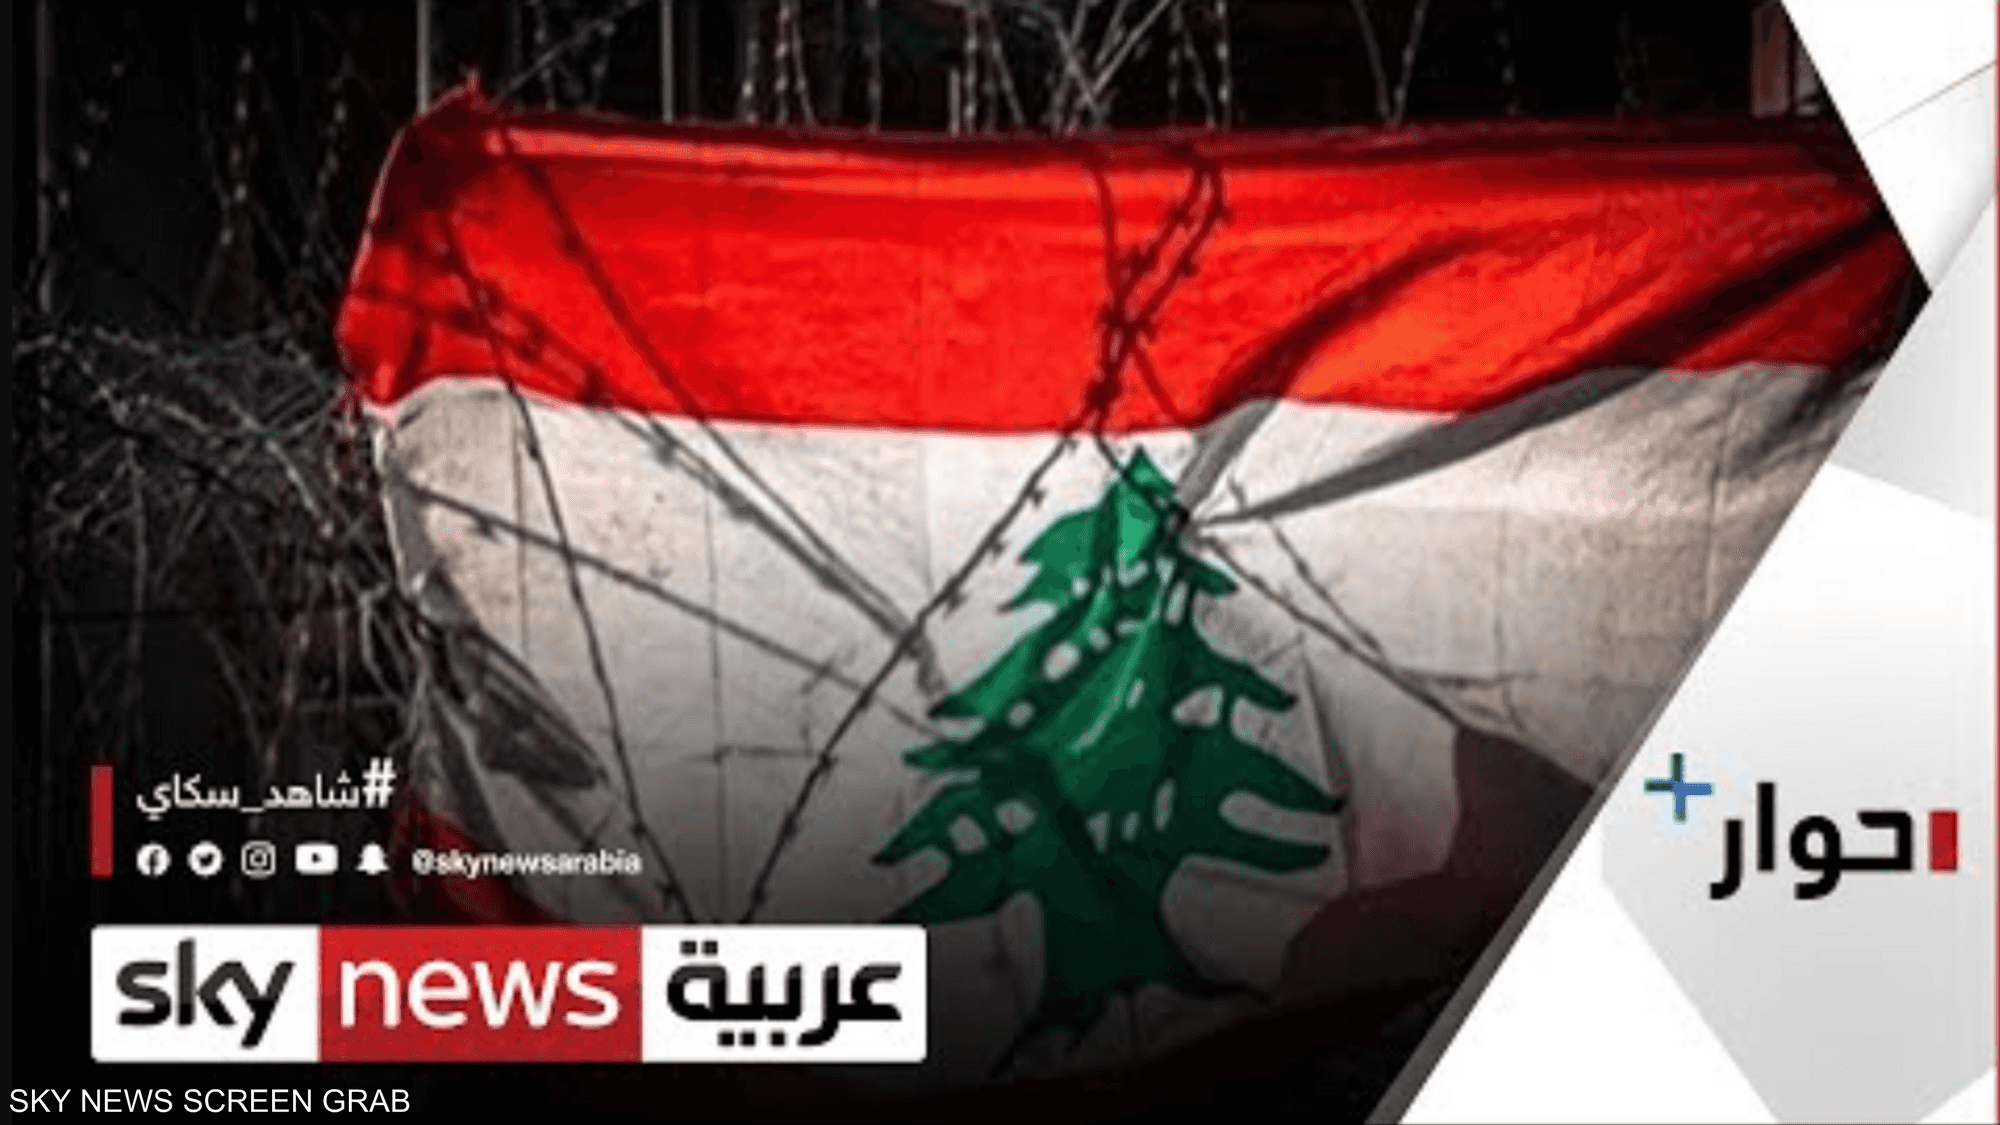 تقرير البنك الدولي يعيد الأزمة اللبنانية إلى الواجهة من جديد